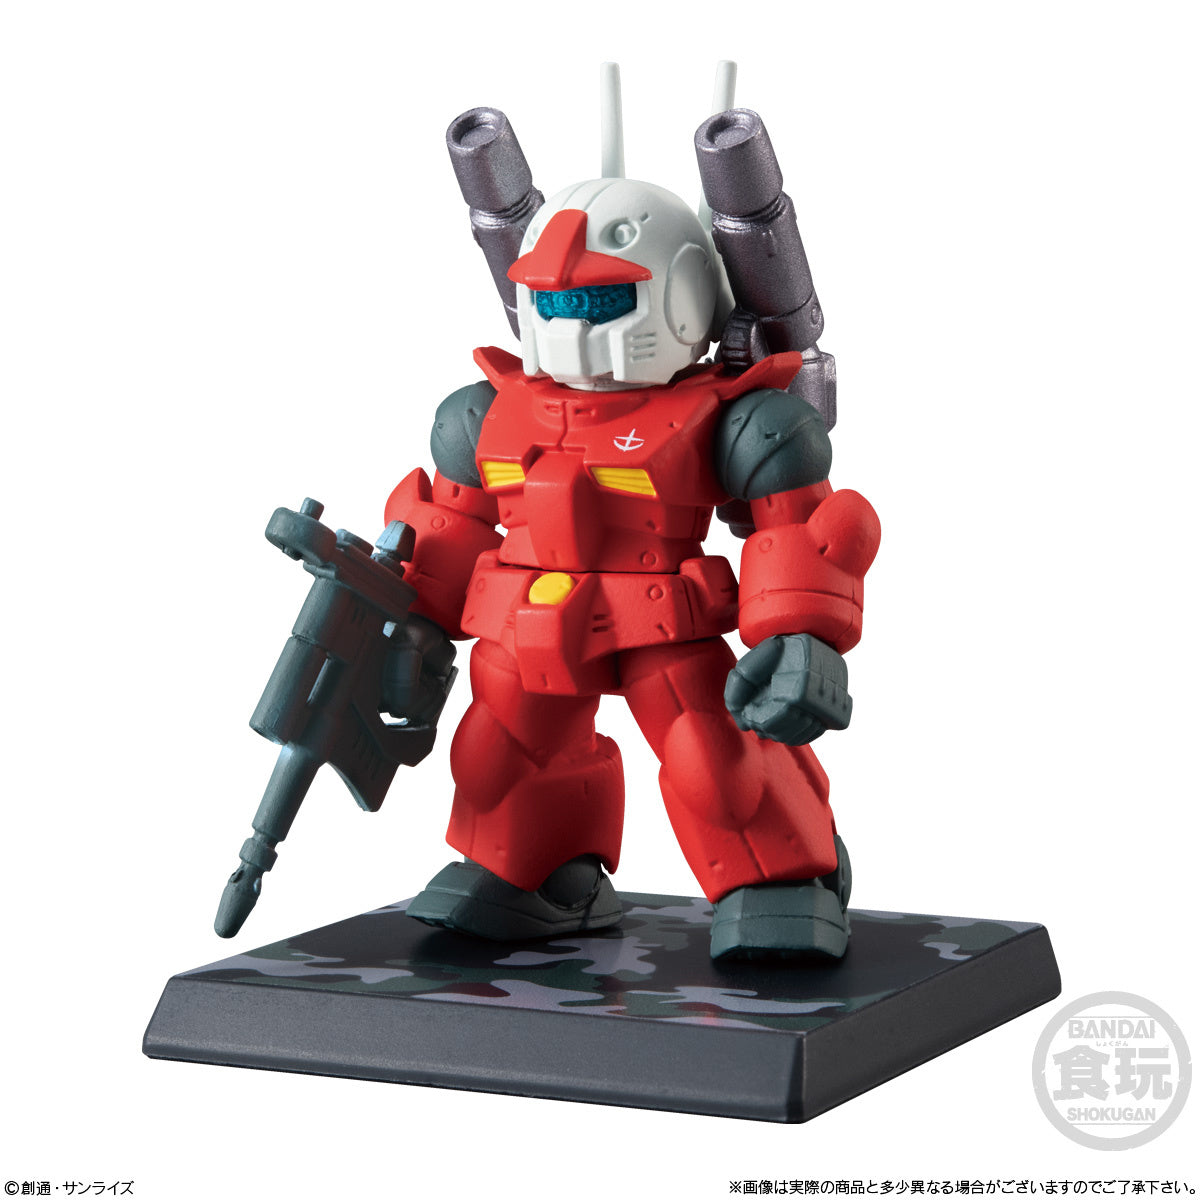 Bandai - Shokugan - FW Gundam Converge - #Operation Jaburo (Box of 10) - Marvelous Toys